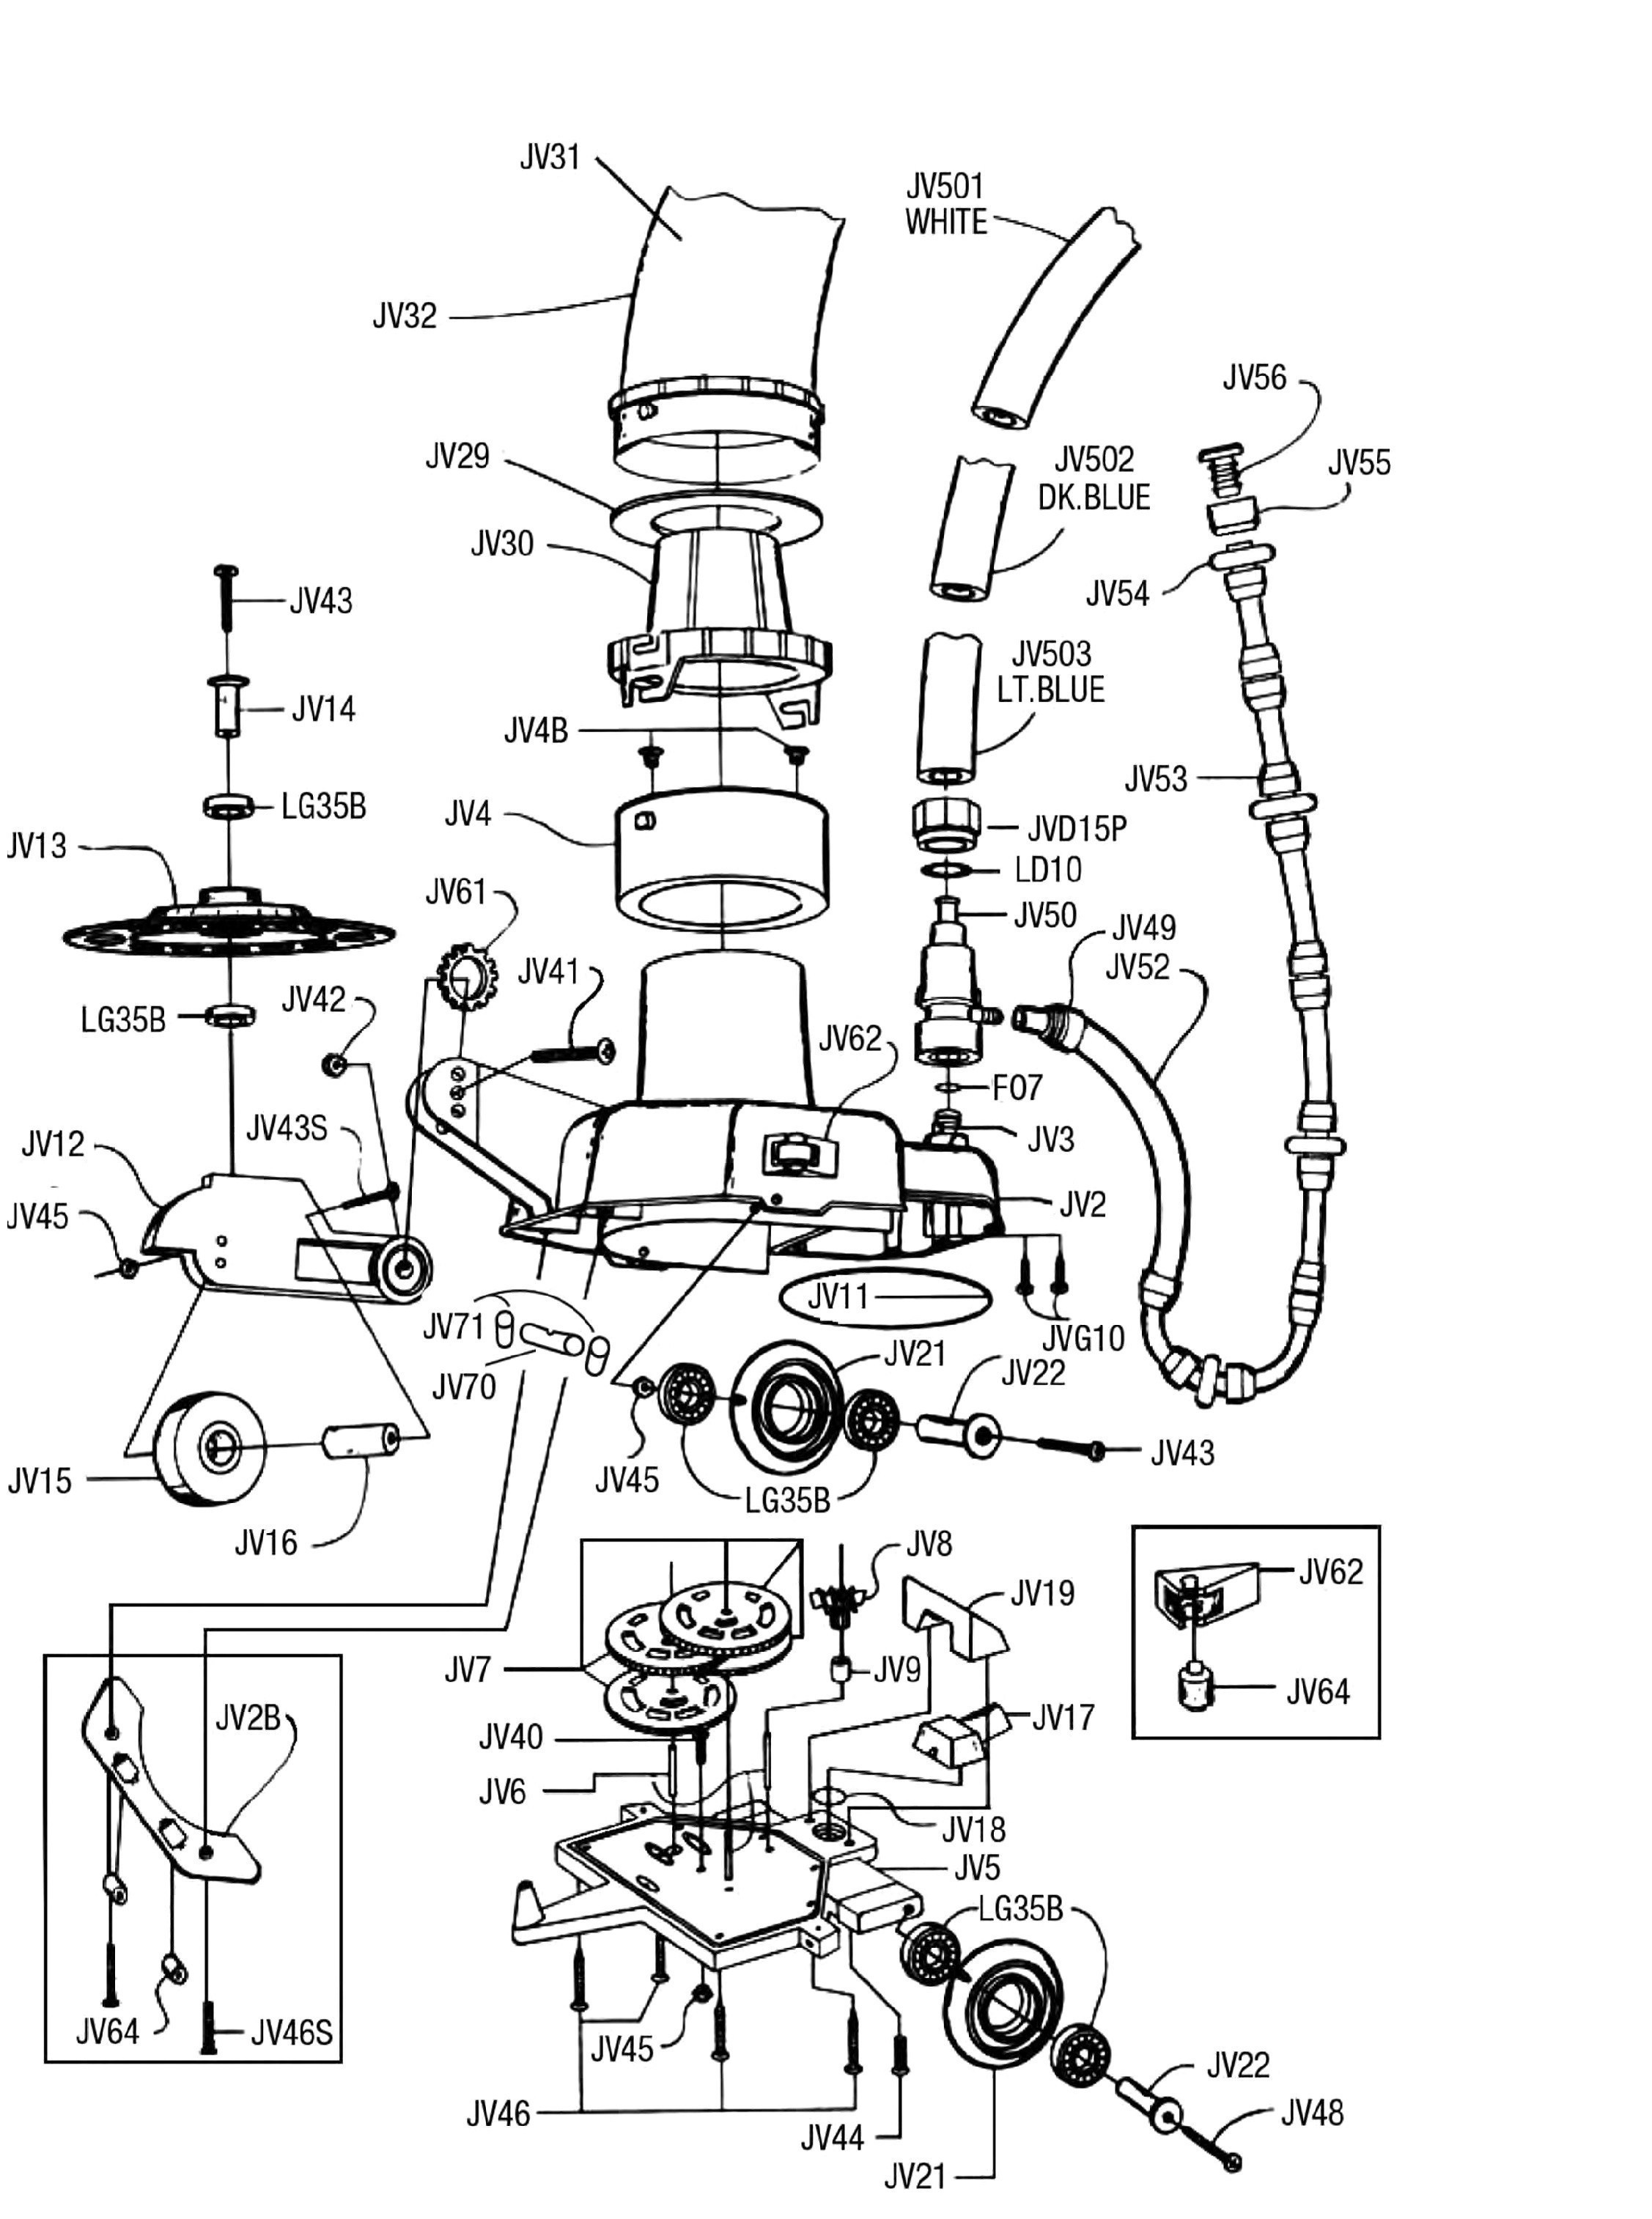 Parts Of A Car Engine Diagram Smart Car Engine Diagram Wiring Diagram forward Of Parts Of A Car Engine Diagram